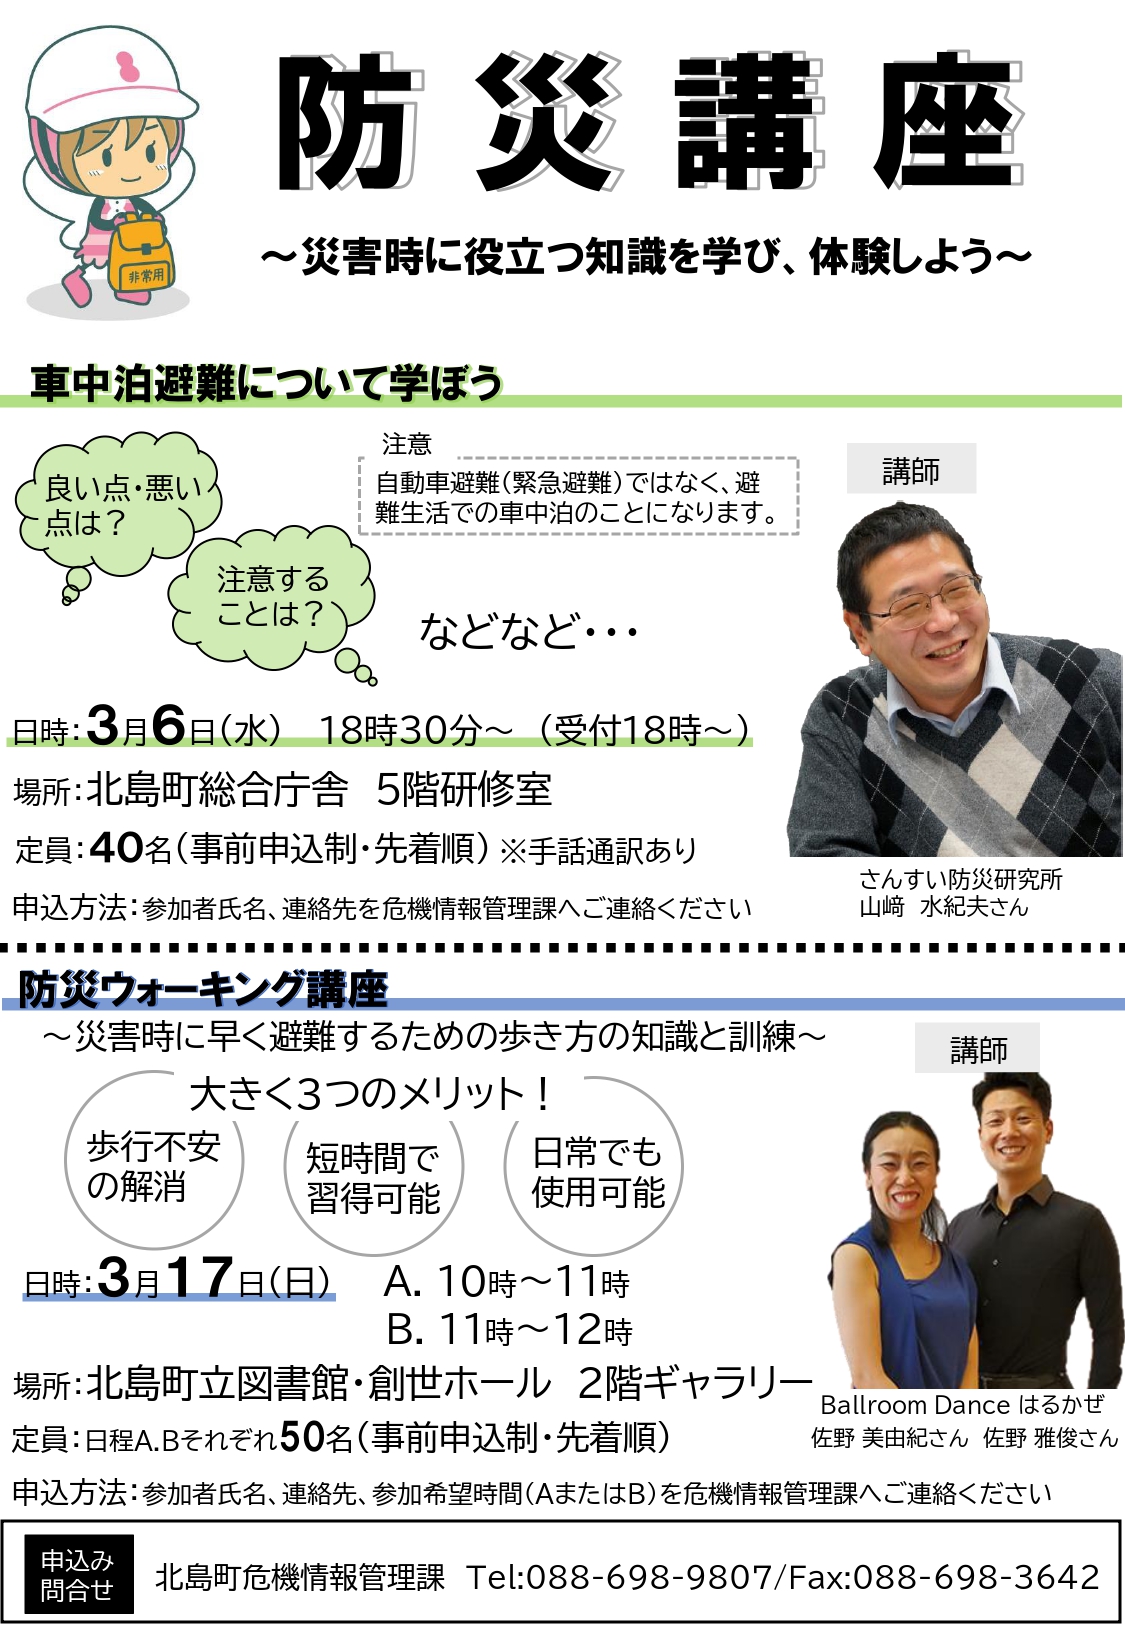 徳島県北島町で「防災ウォーキング講座」が開催されます